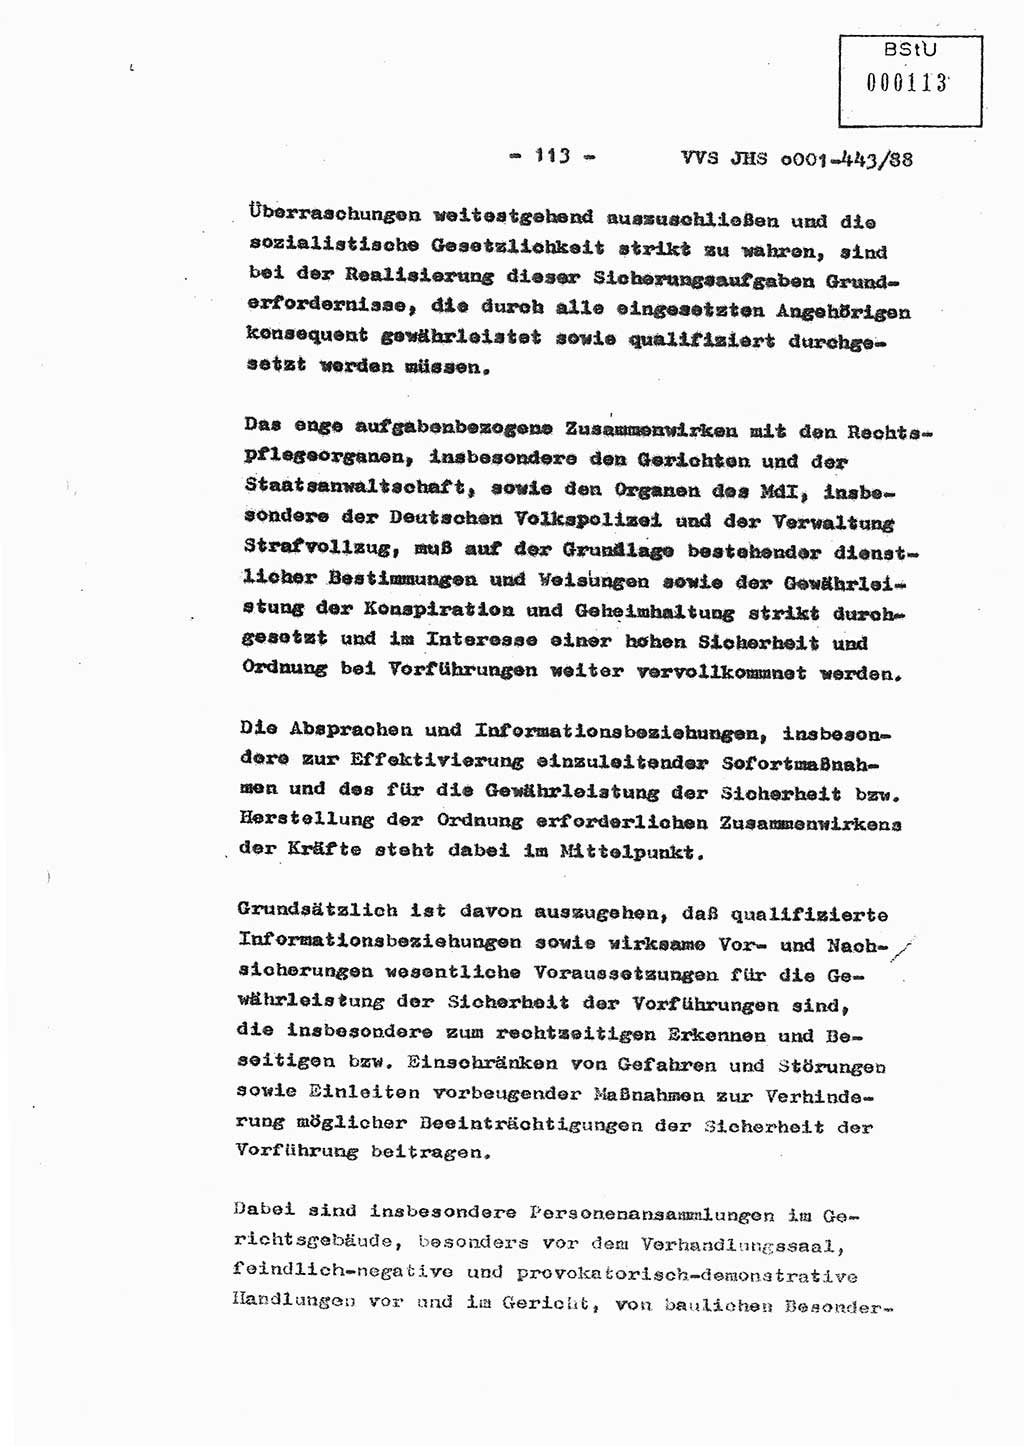 Diplomarbeit Hauptmann Michael Rast (Abt. ⅩⅣ), Major Bernd Rahaus (Abt. ⅩⅣ), Ministerium für Staatssicherheit (MfS) [Deutsche Demokratische Republik (DDR)], Juristische Hochschule (JHS), Vertrauliche Verschlußsache (VVS) o001-443/88, Potsdam 1988, Seite 113 (Dipl.-Arb. MfS DDR JHS VVS o001-443/88 1988, S. 113)